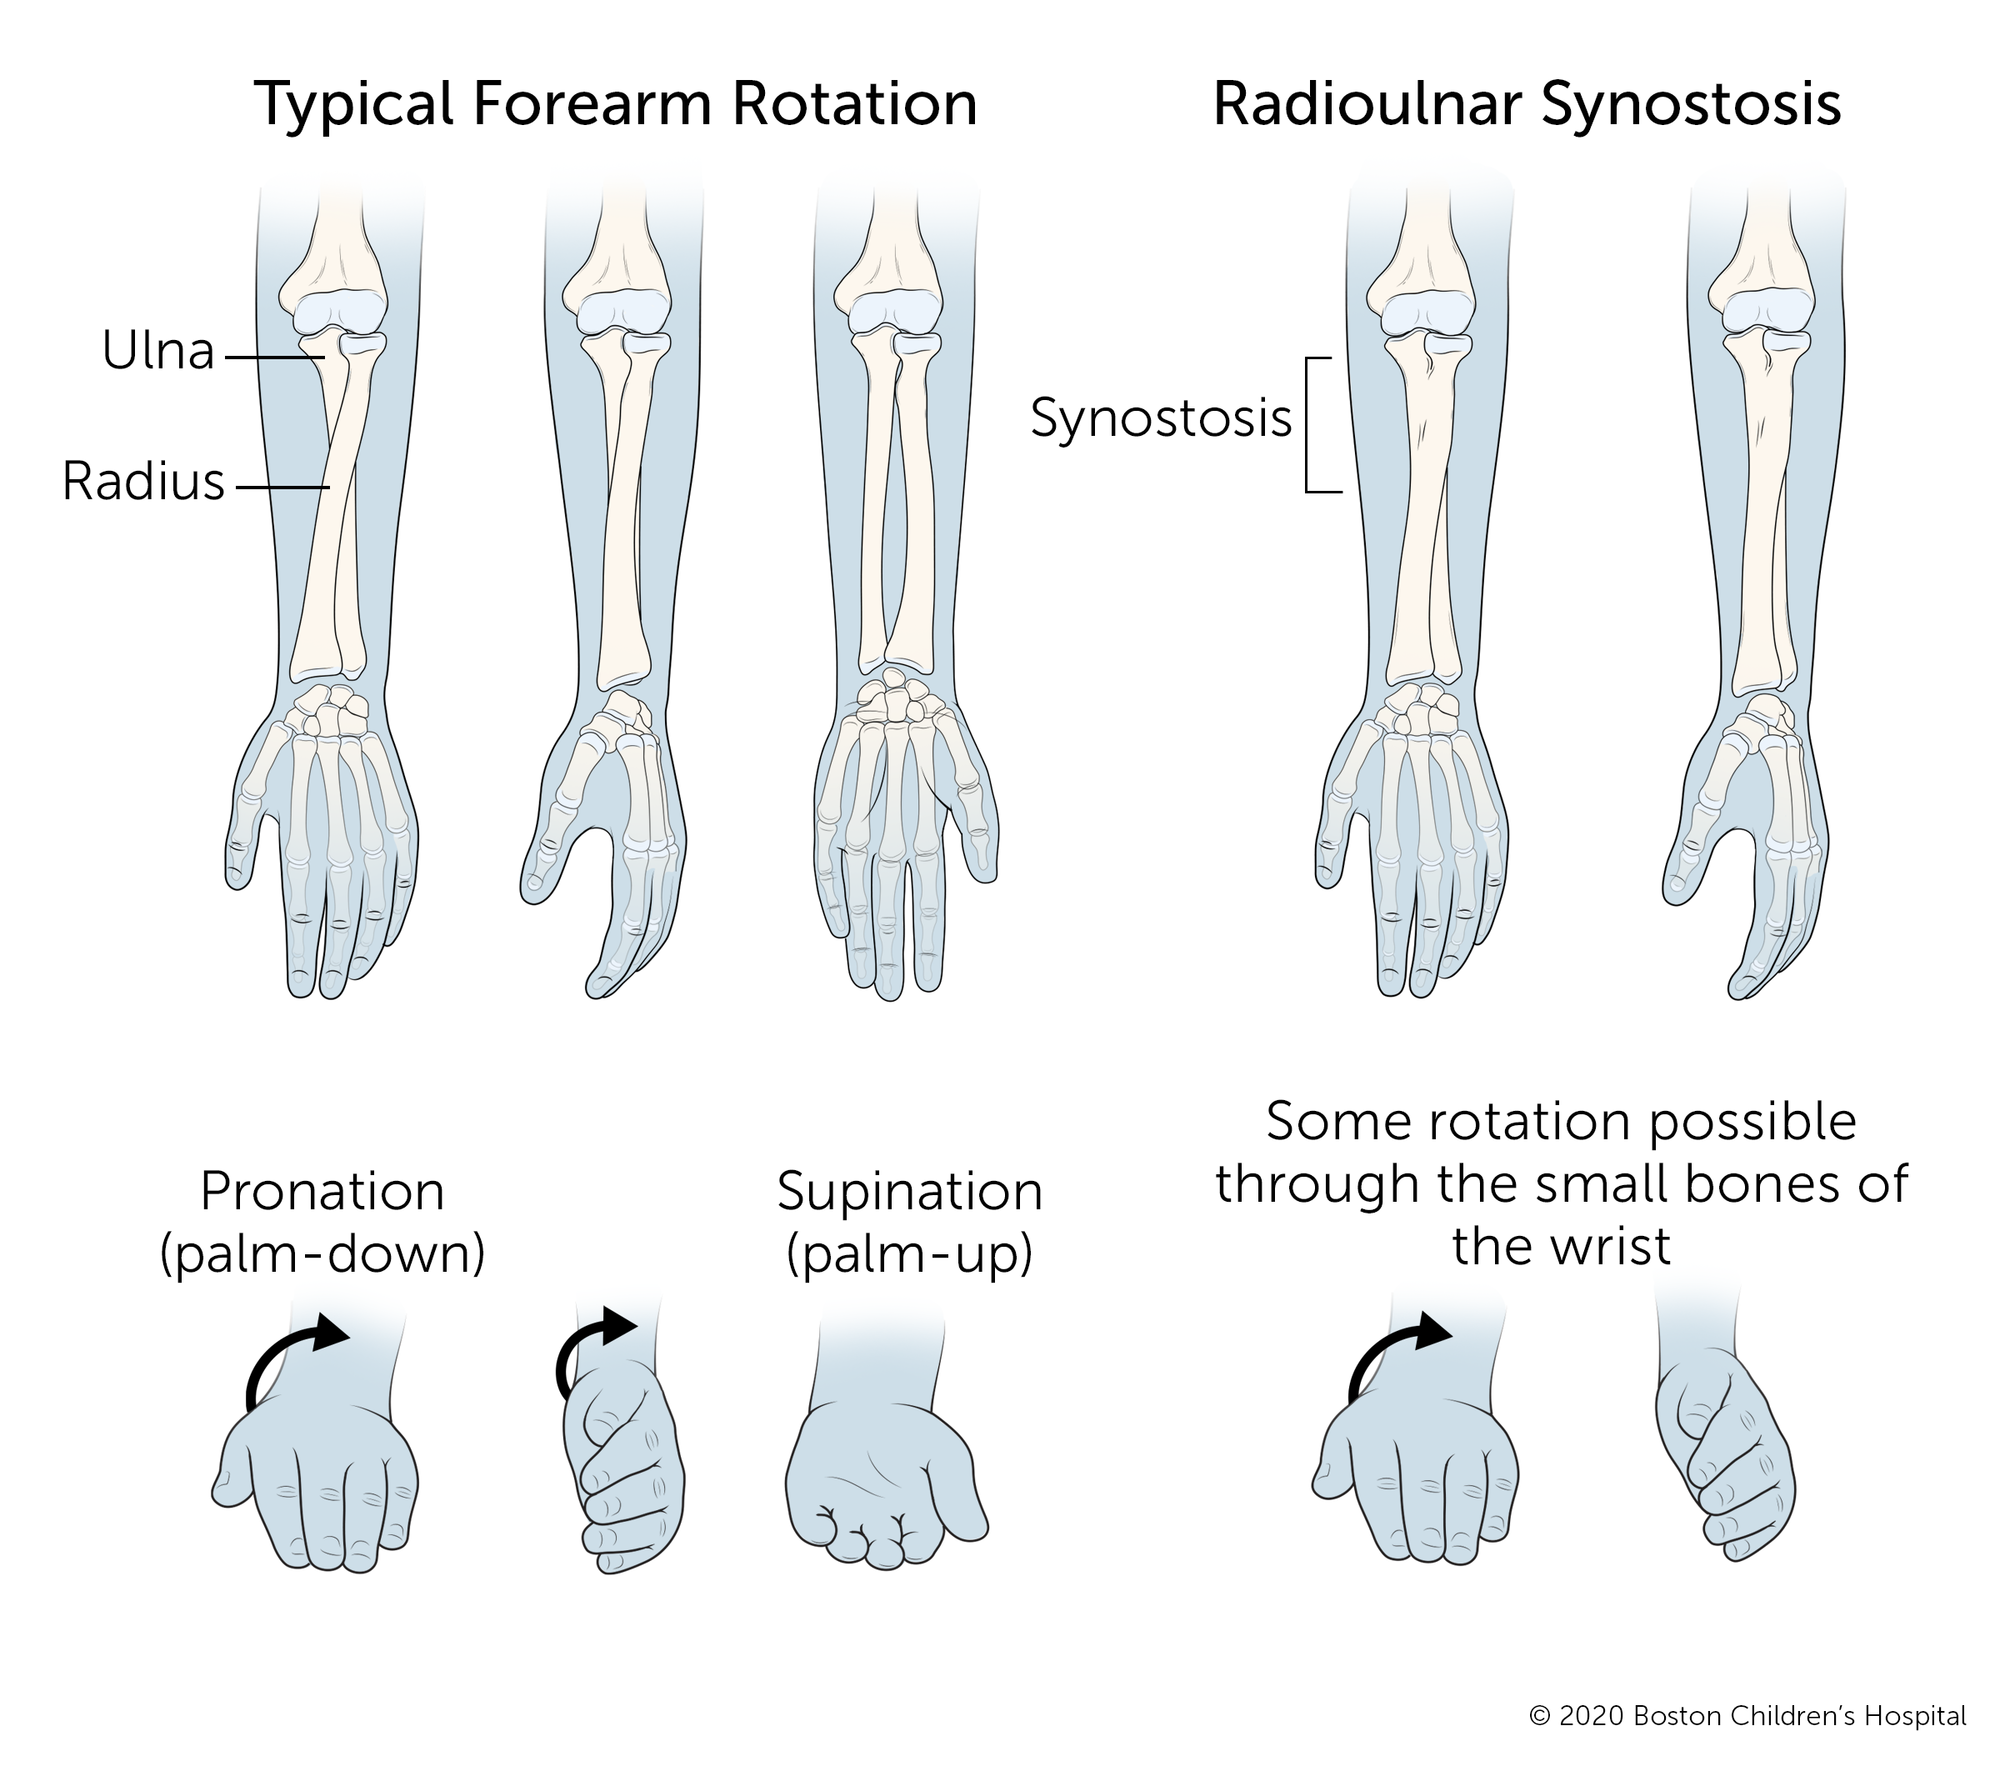 典型的前臂可以向两个方向旋转:手掌可以向下或向上。尺骨桡缝早闭，尺骨和桡骨连接，限制旋转。